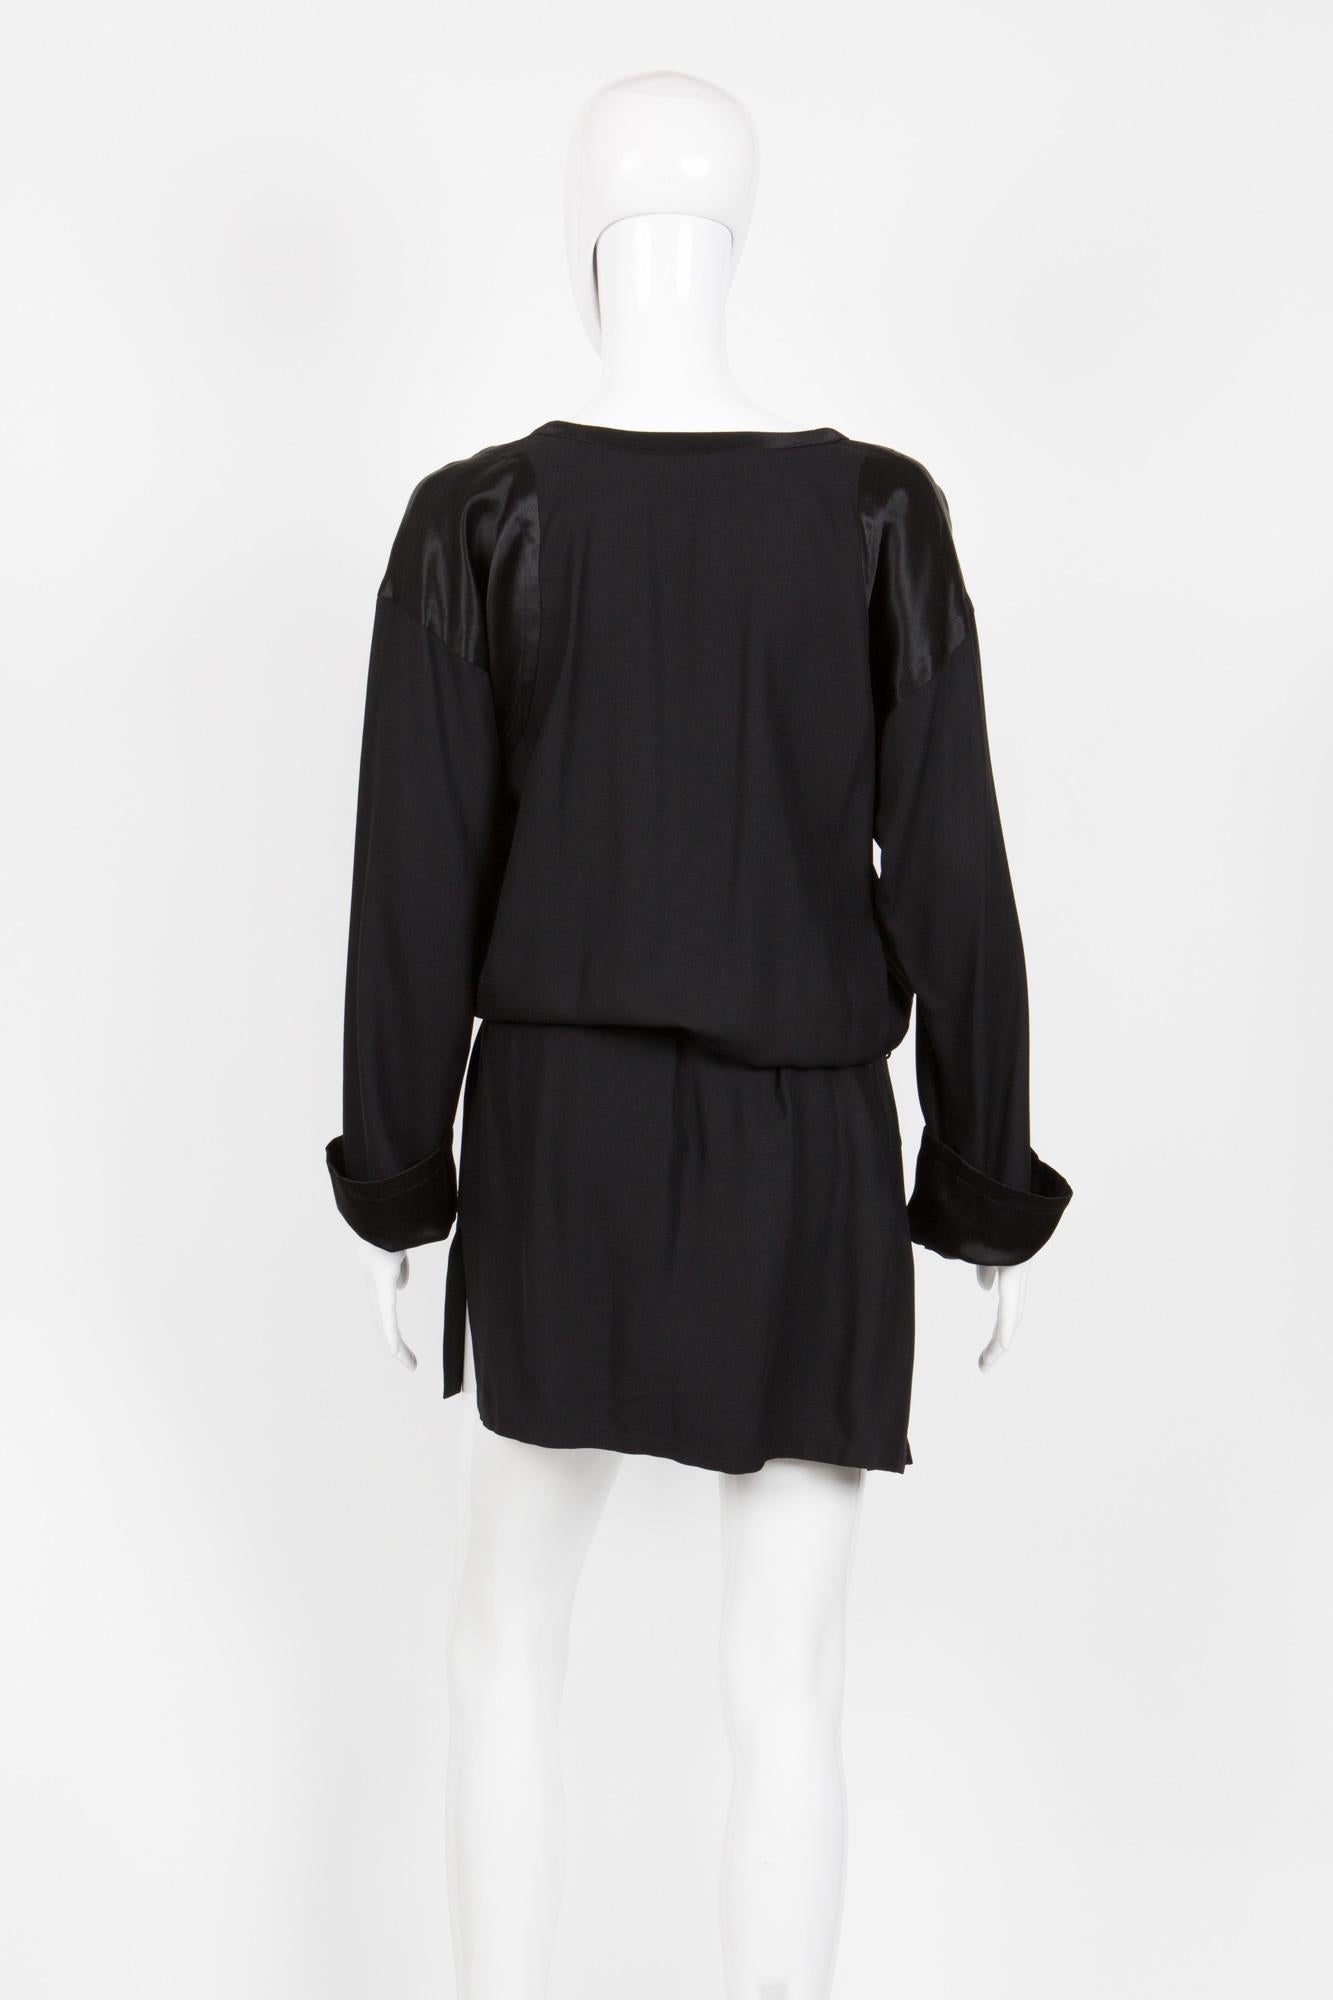 Women's 1990s Yves Saint Laurent Black Fluid Short Dress